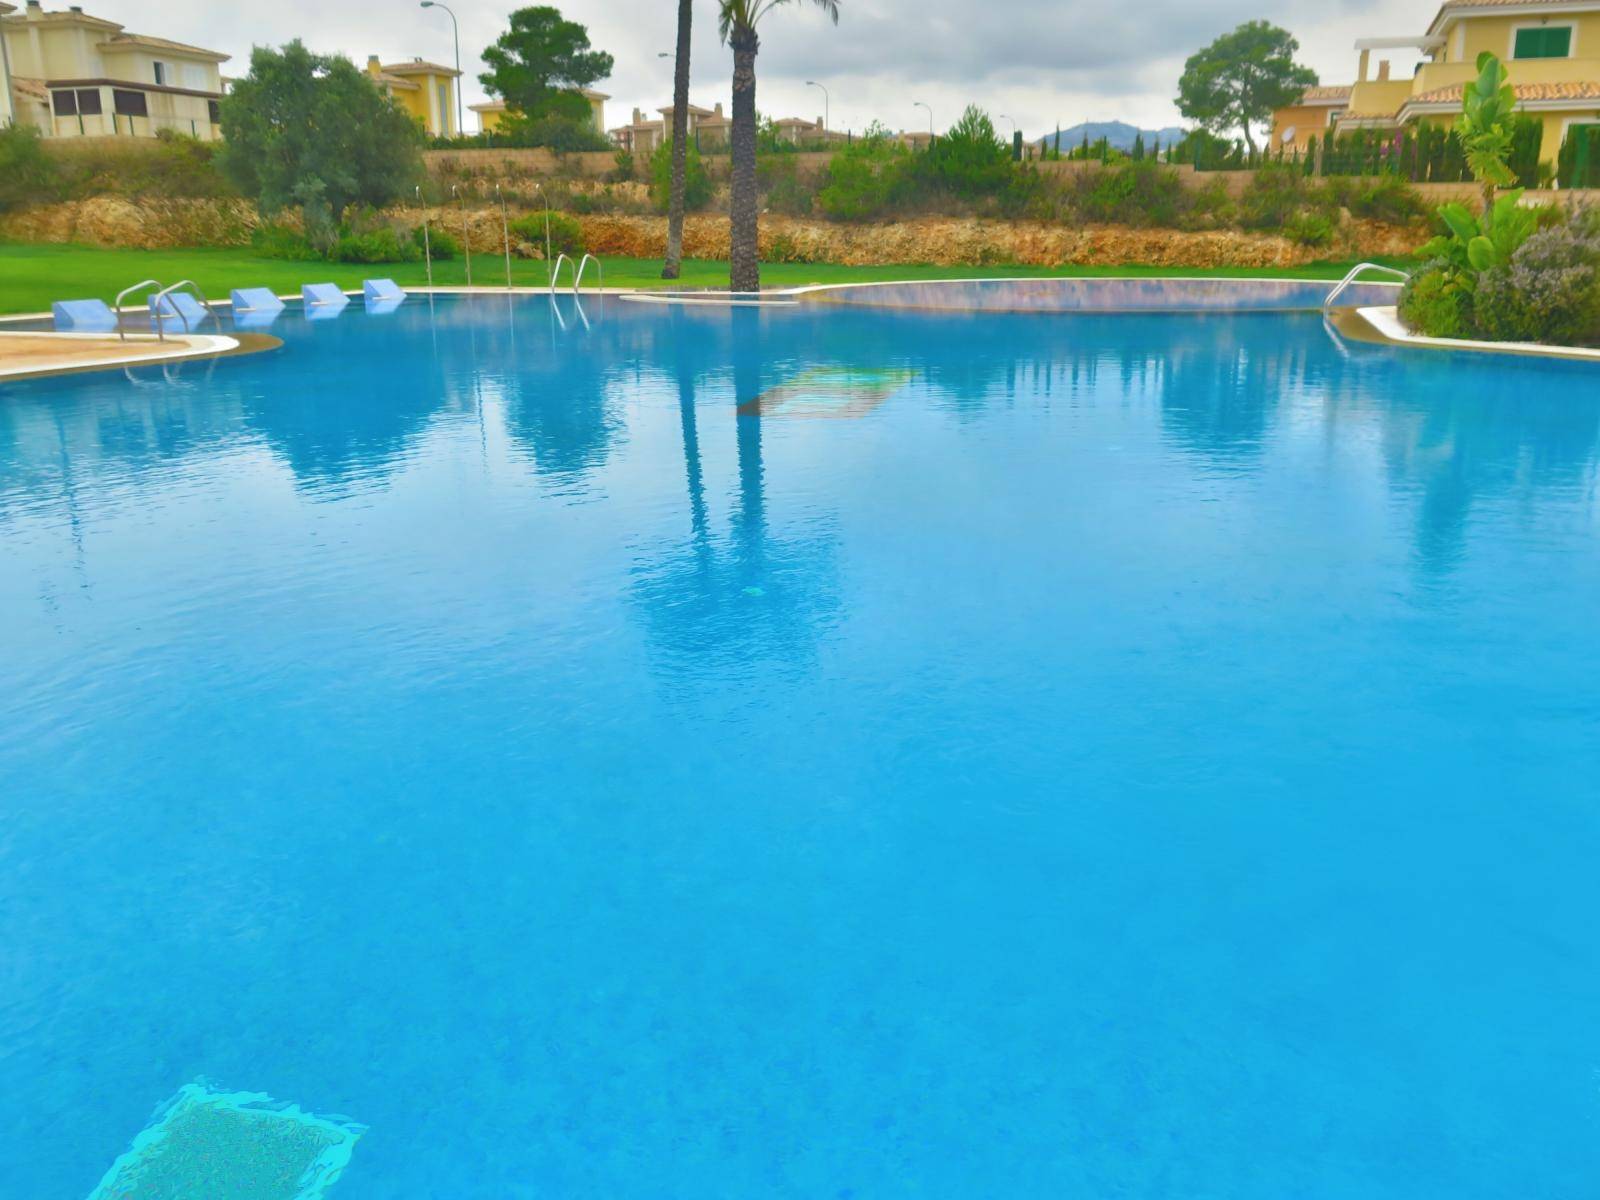 Bungalow en alquiler Cala murada con piscina comunitaria y jacuzzi